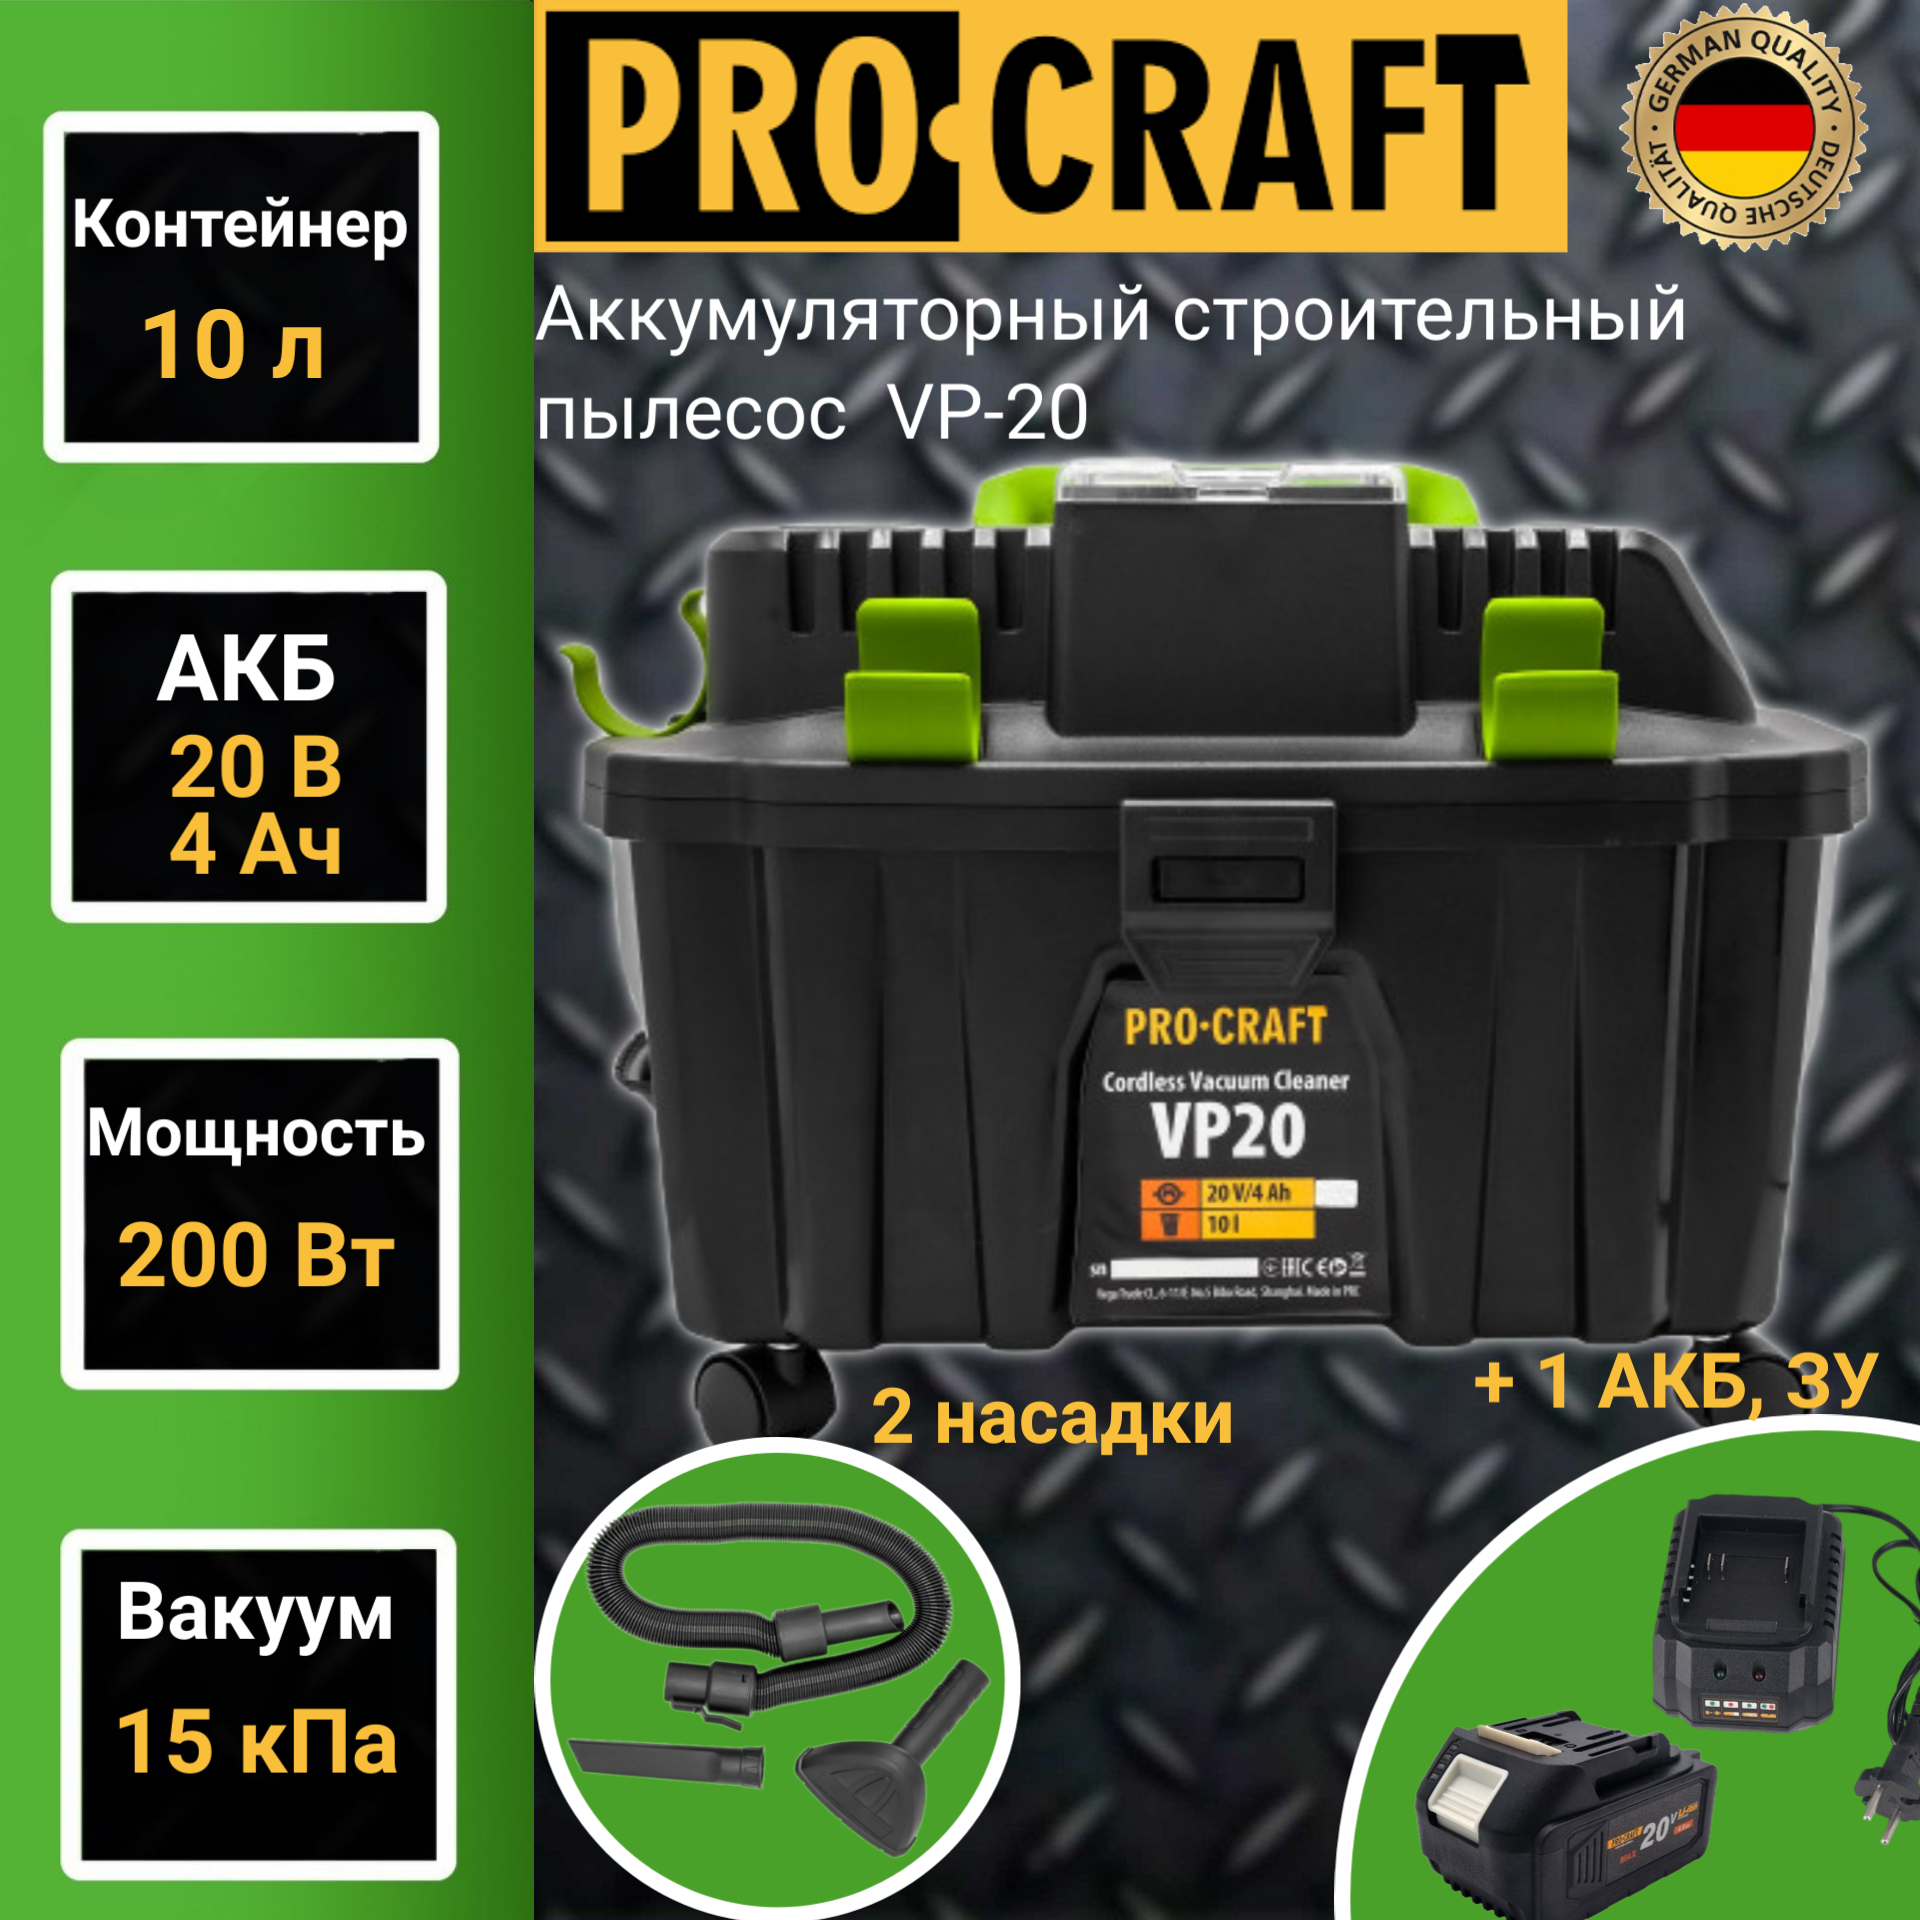 Пылесос строительный аккумуляторный Procraft VP-20, 1 АКБ+ЗУ, 200Вт, 10л, шланг 2м